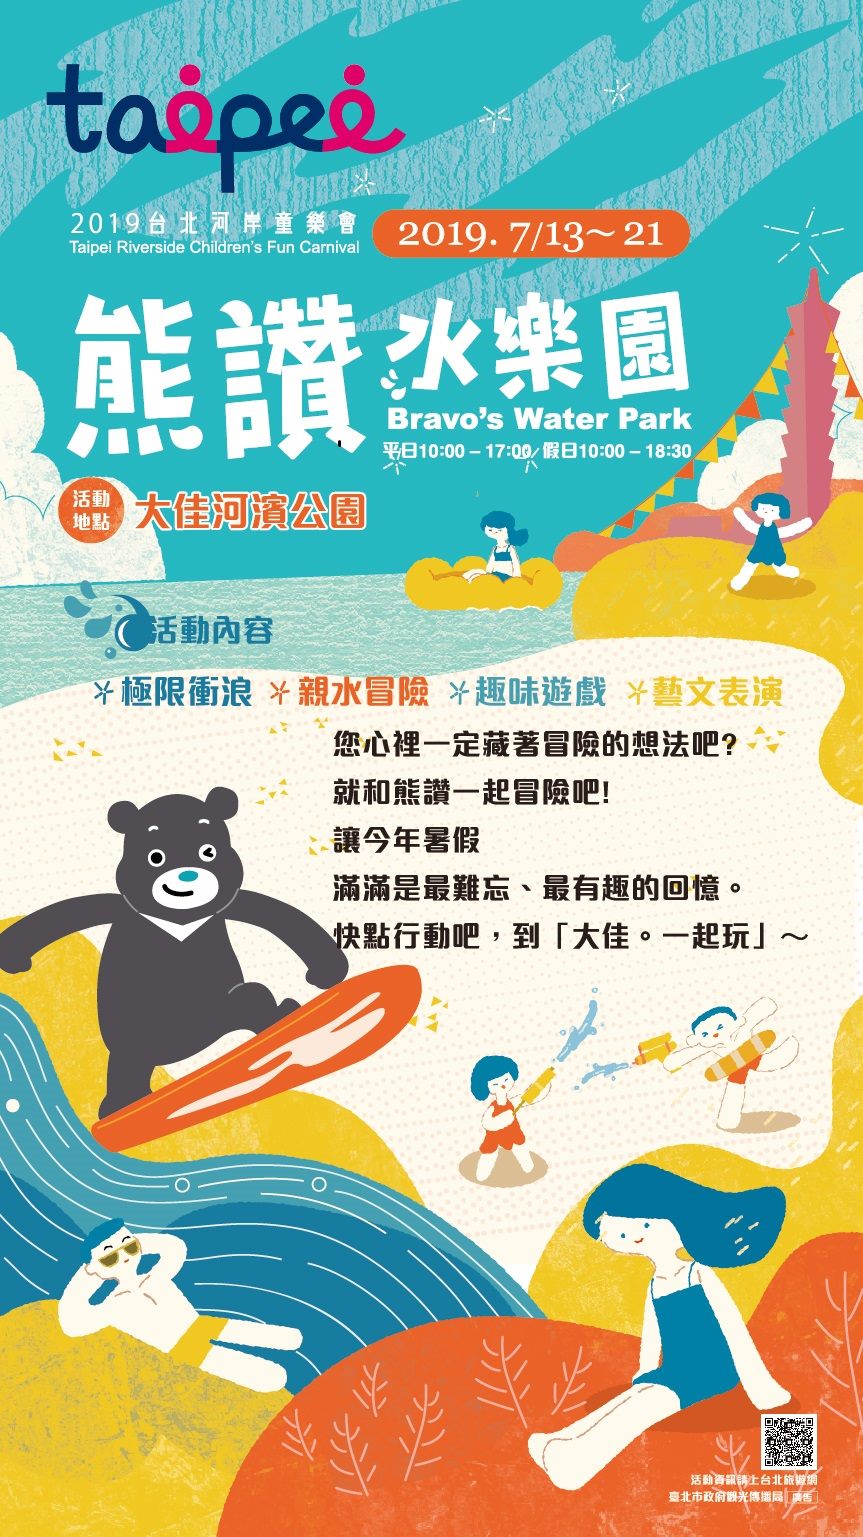 2019台北河岸童樂會「熊讚水樂園」將於7月13日至21日熱鬧登場